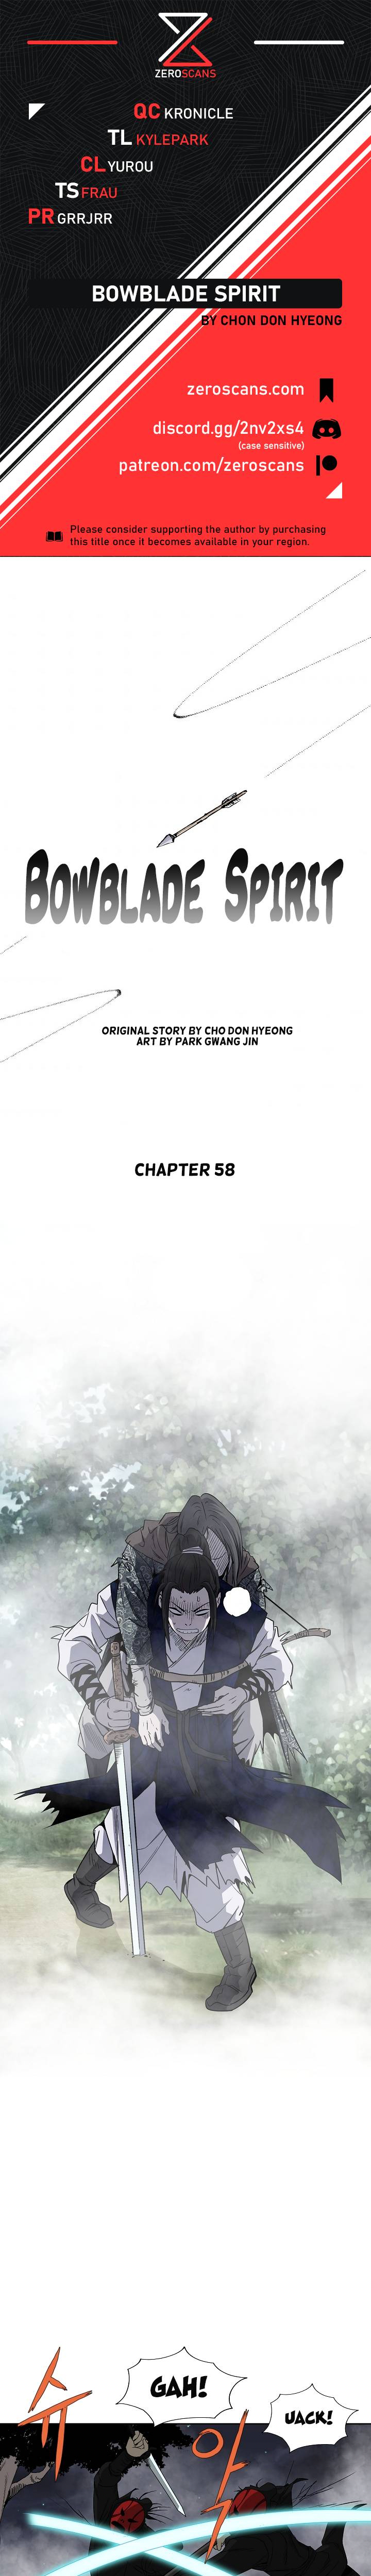 Bowblade Spirit - Chapter 58 Page 1